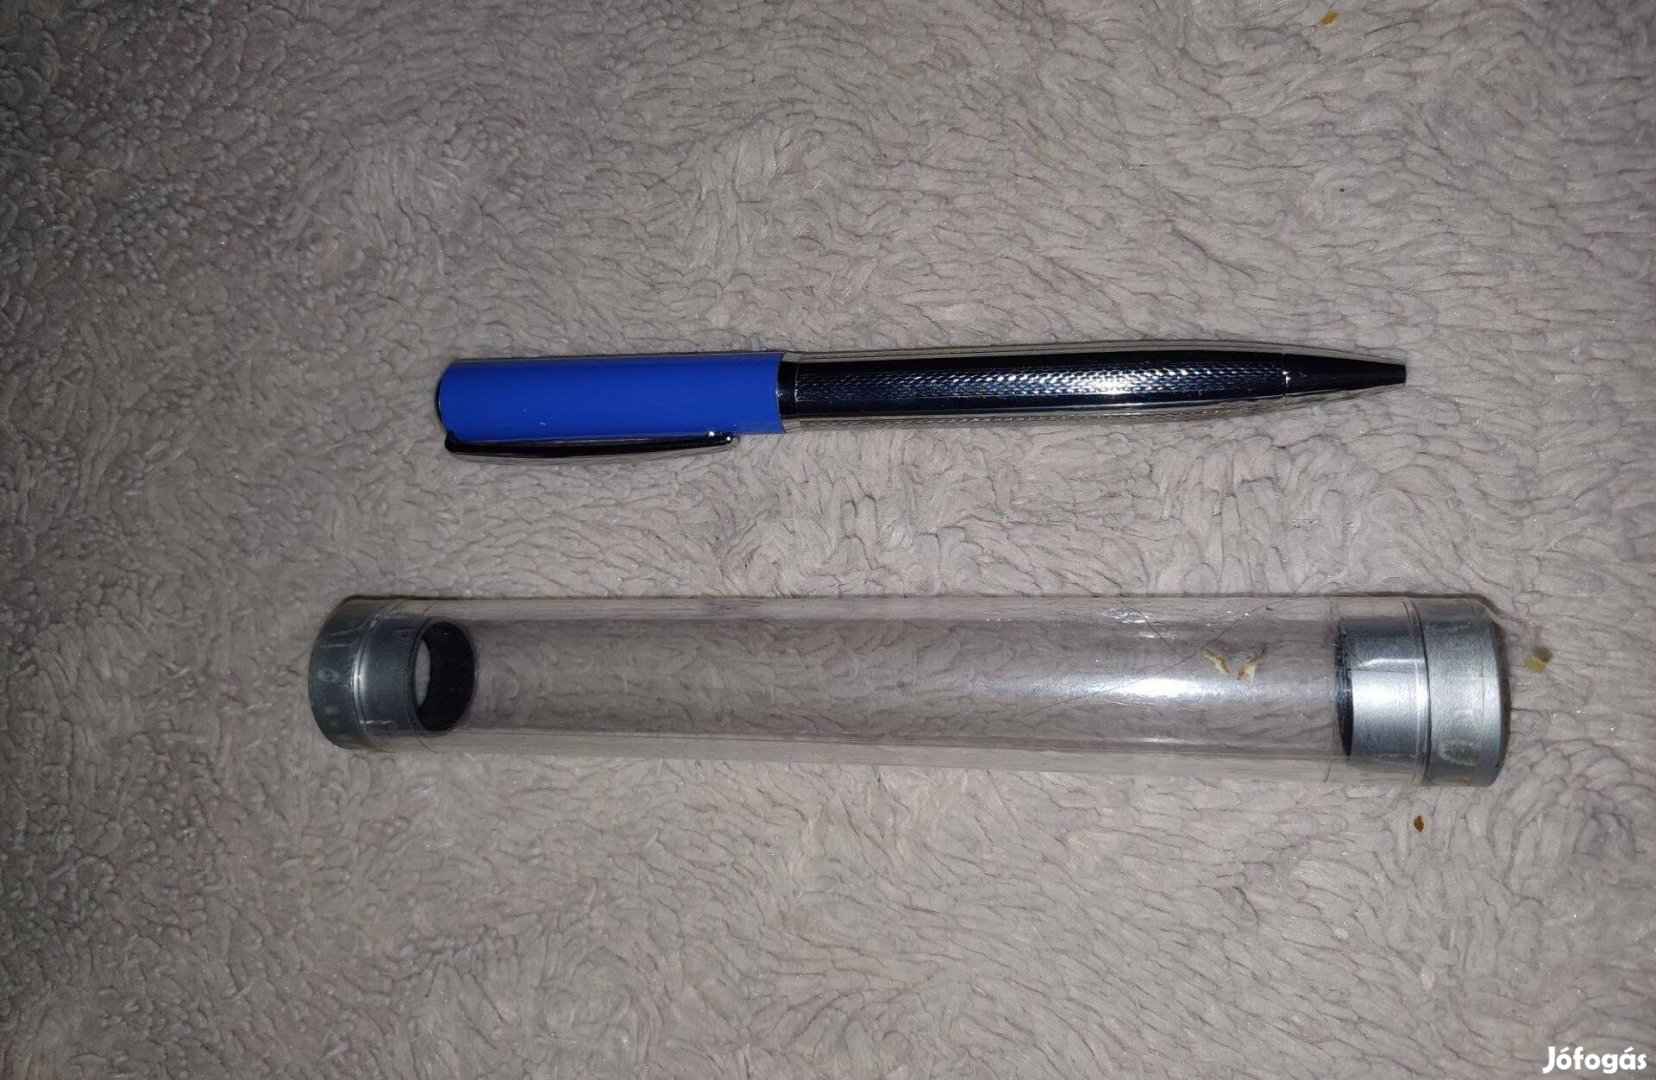 Új ezüst/kék színű toll tartóban